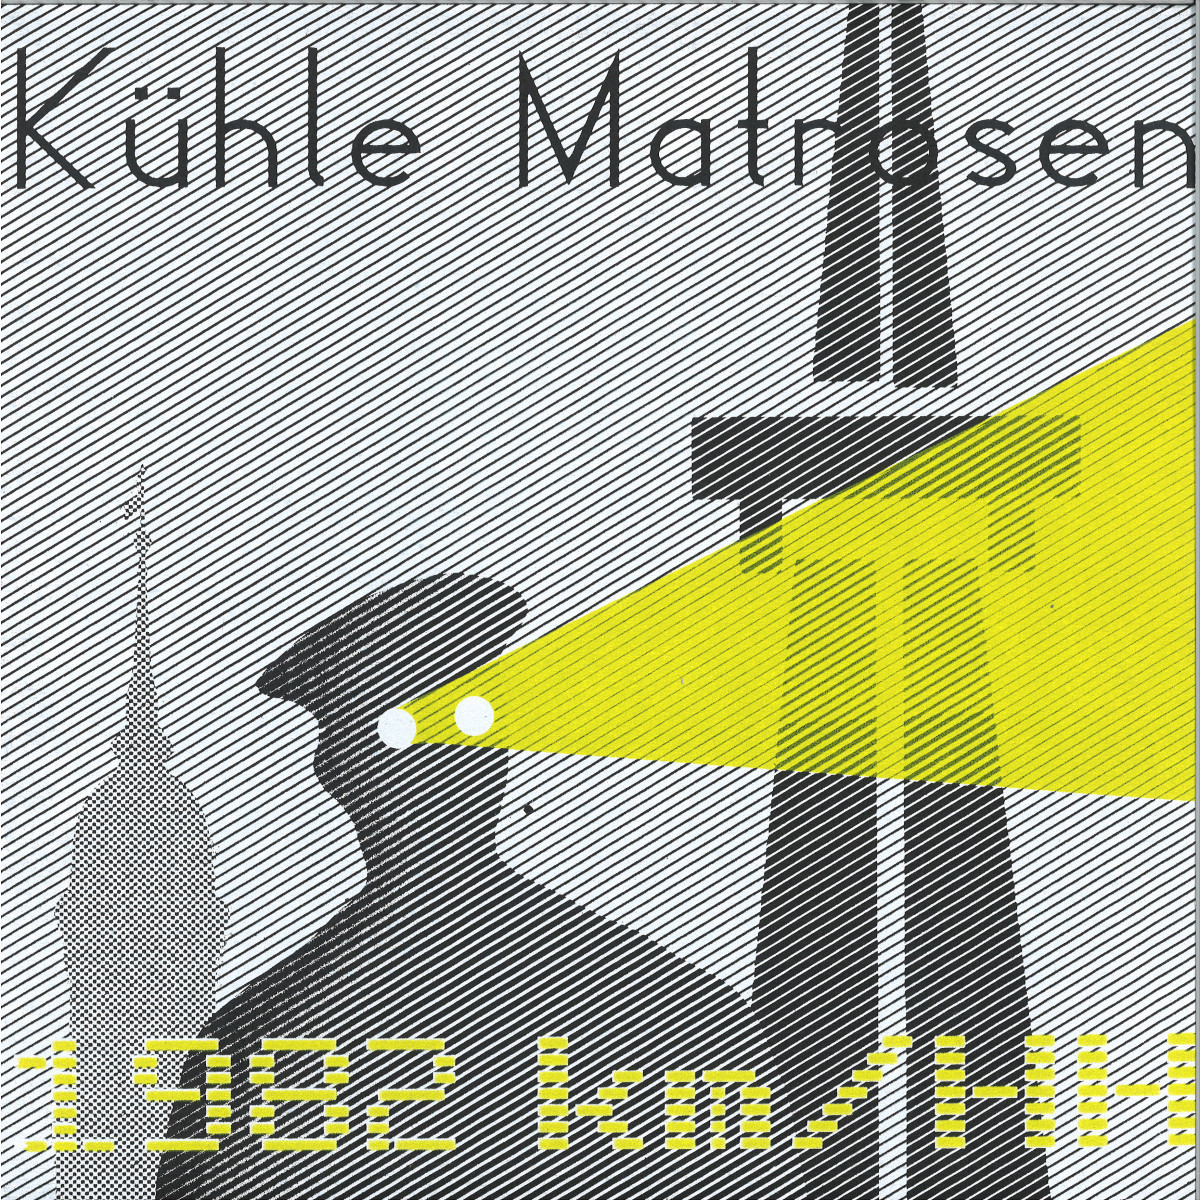 Kühle Matrosen - 1982 km-HH / Kernkrach KRACH031 - Vinyl